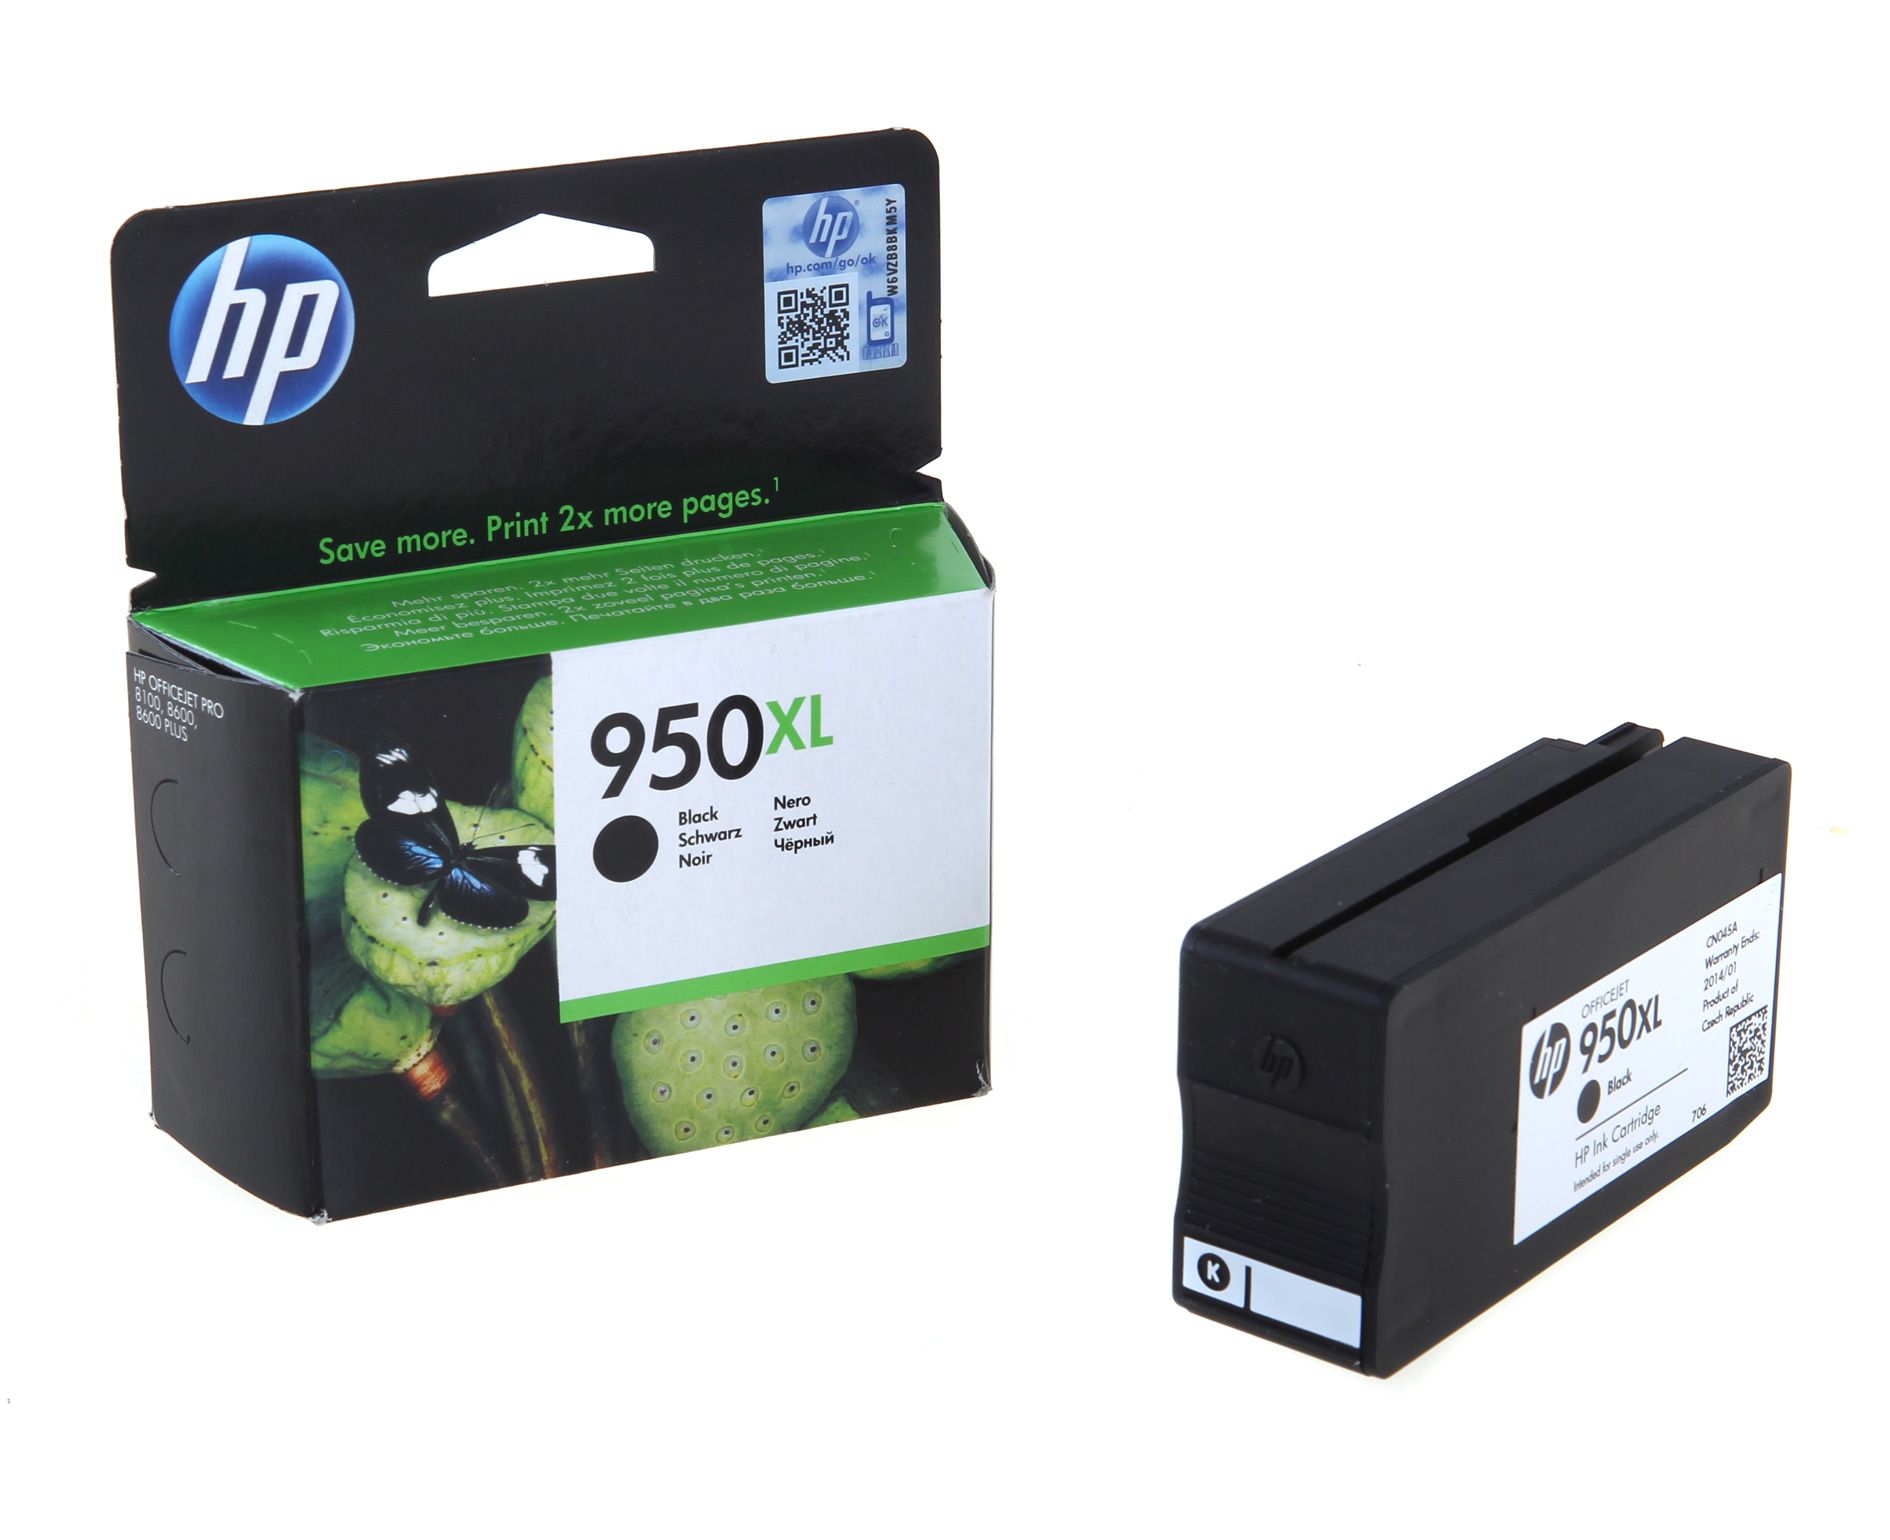 Картридж HP CN045AE №950XL оригинальный чёрный для принтеров OfficeJet Pro 8615 | OfficeJet Pro 8600 E-AIO | OfficeJet Pro 251dw | OfficeJet Pro 276dw | OfficeJet Pro 8620 | OfficeJet Pro 8610 | OfficeJet Pro 8600 Plus e-AIO | OfficeJet Pro 8100 e-Printer